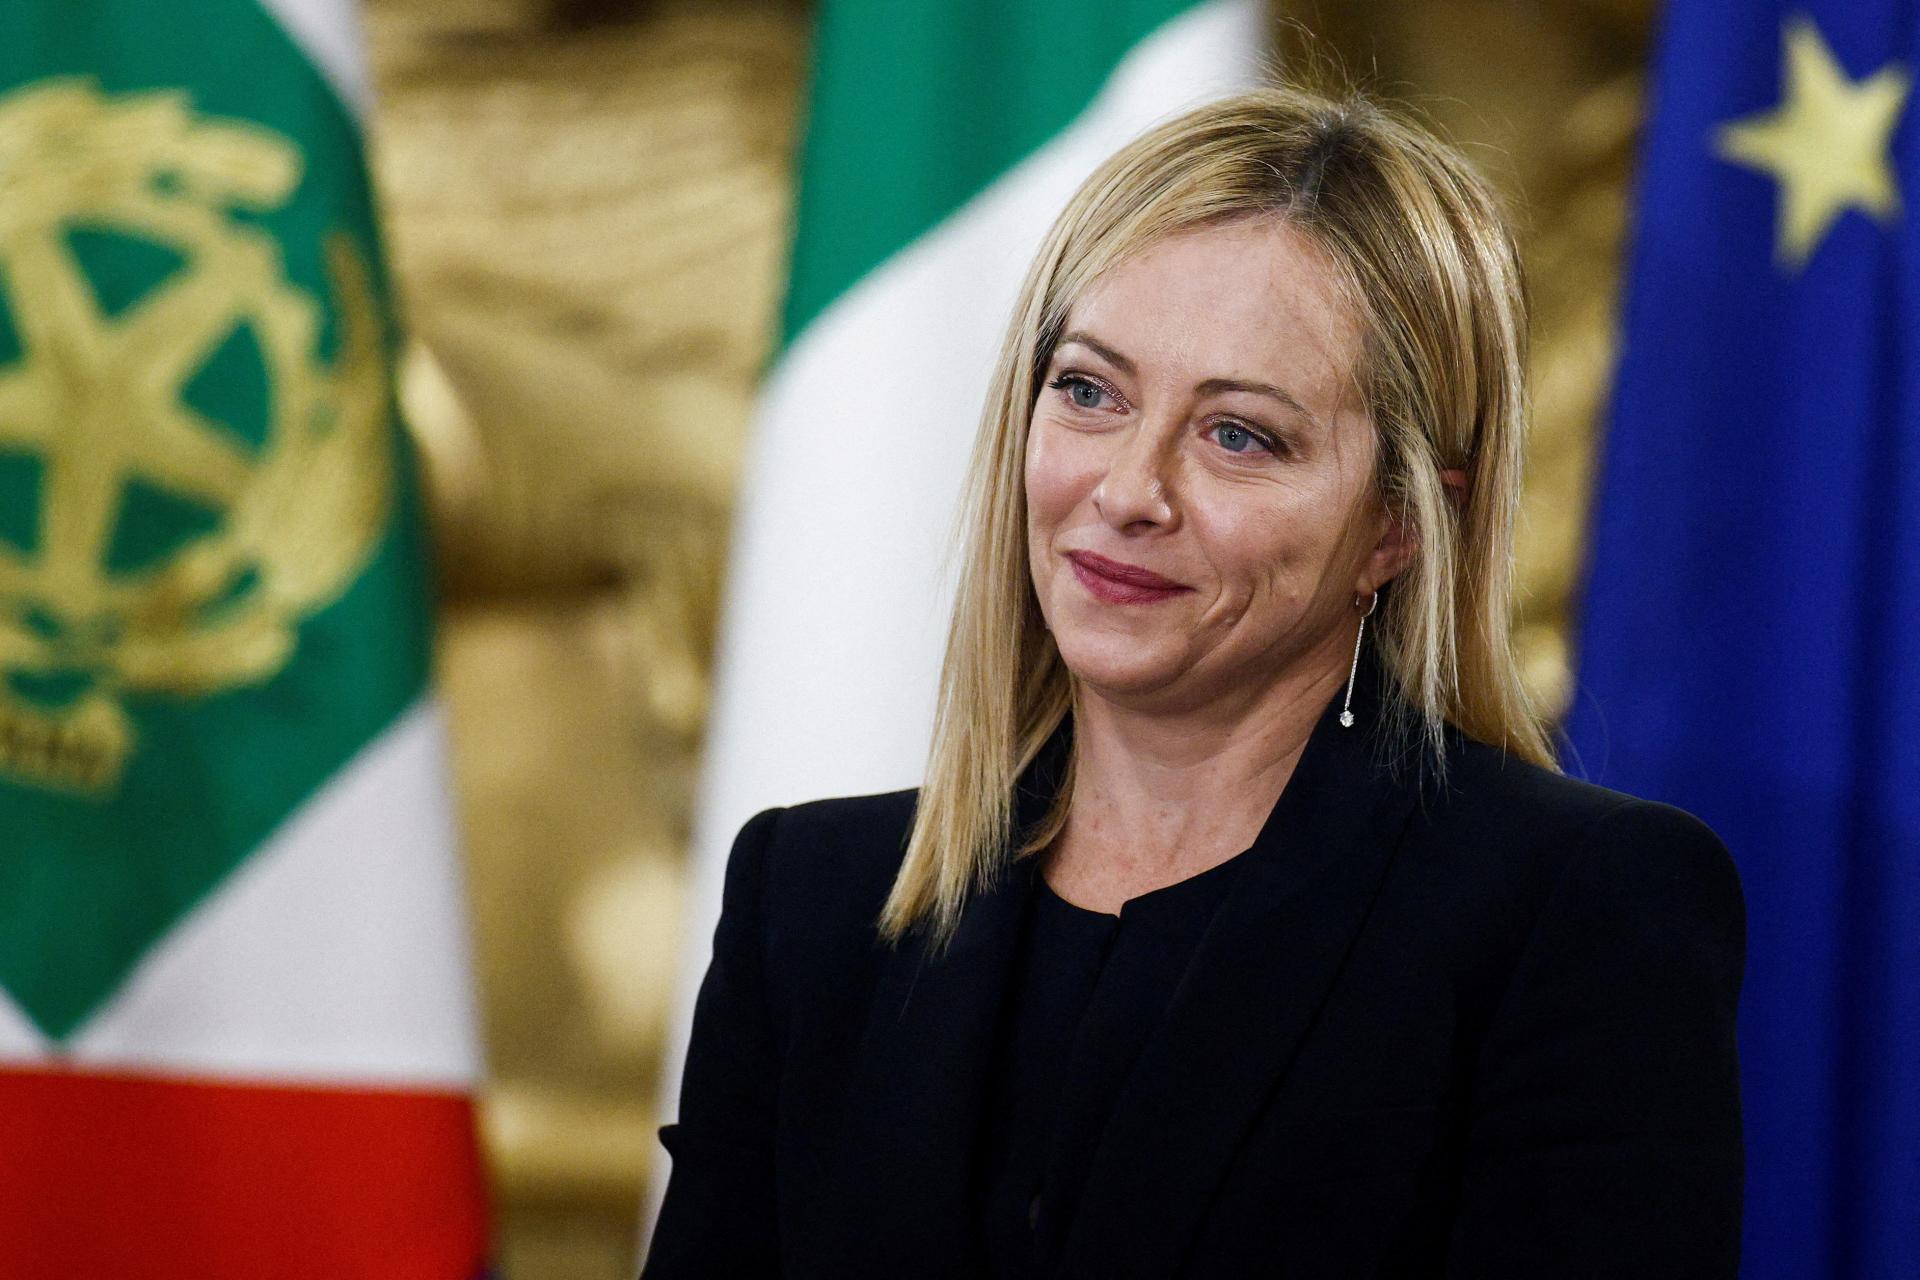 Matka všetkých reforiem: Talianska vláda schválila spornú zmenu ústavy, premiéra by mali občania voliť priamo